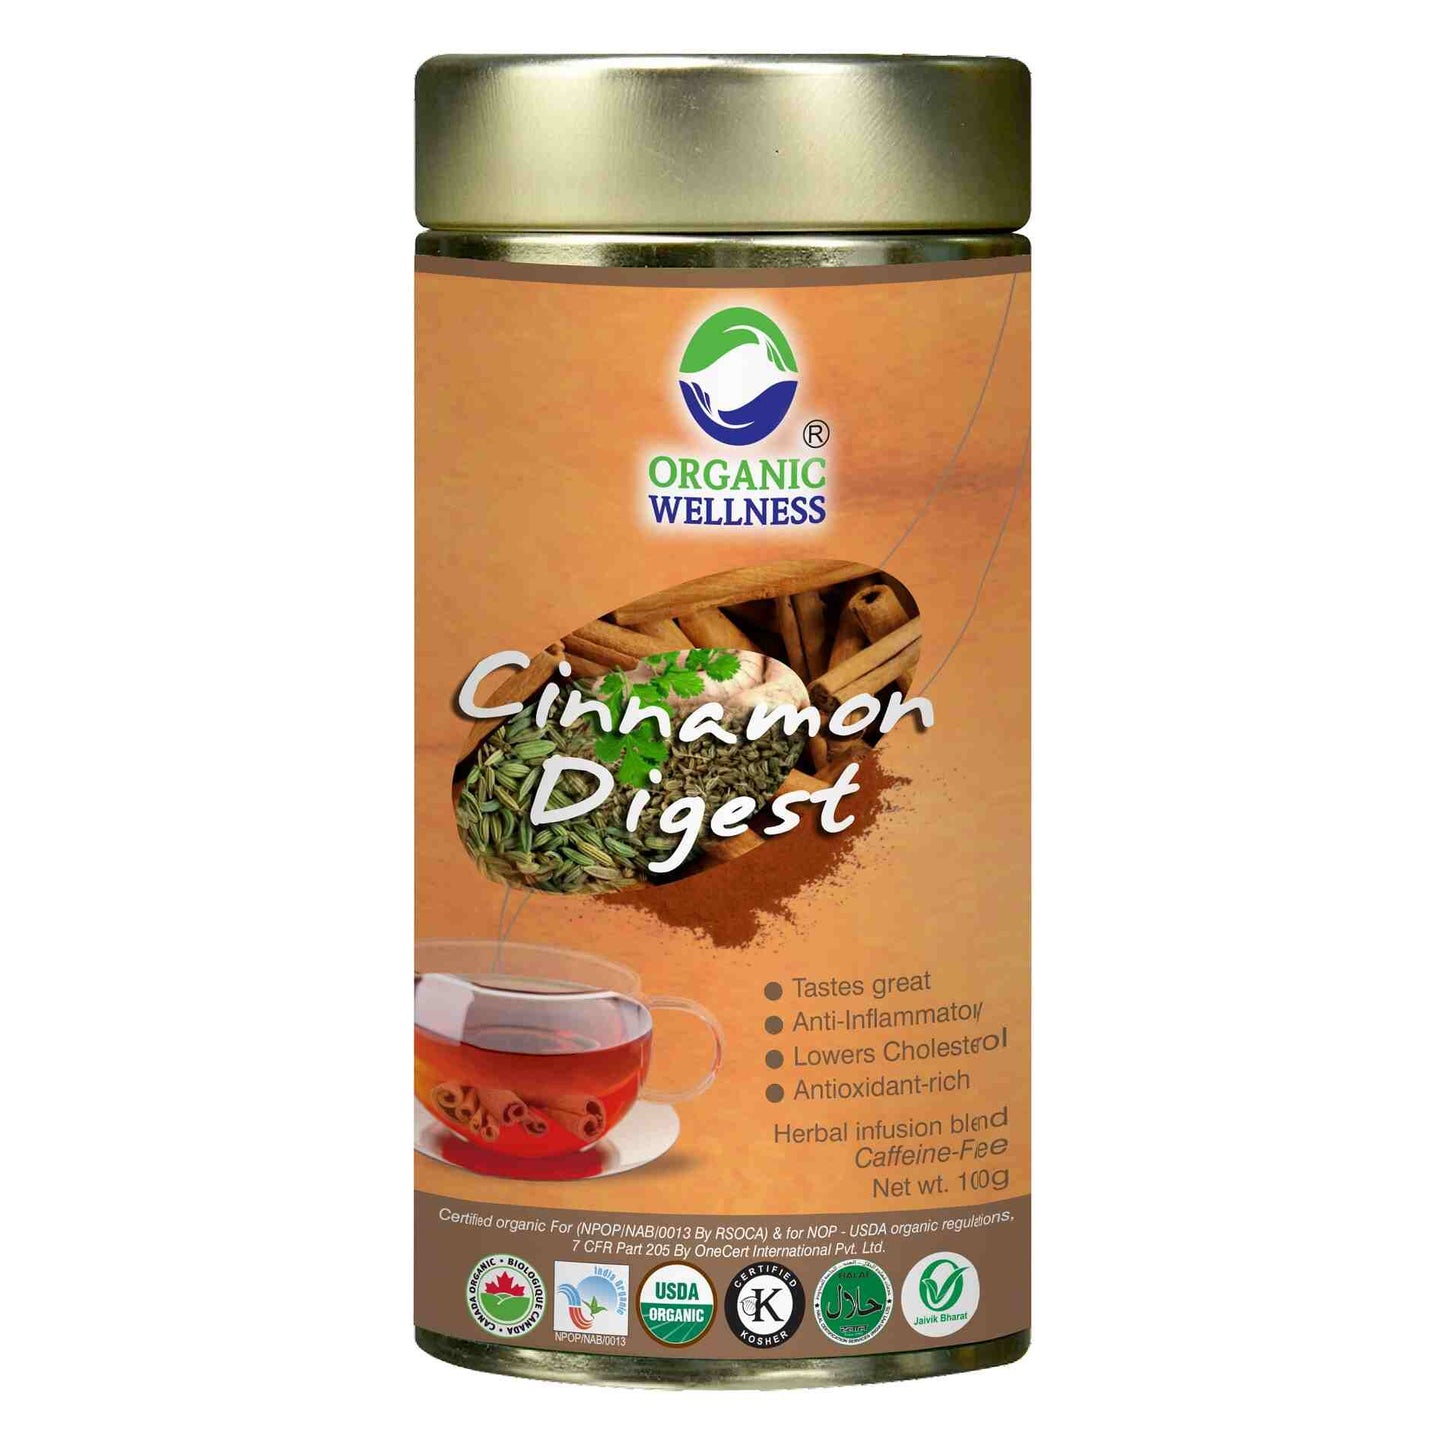 Organic Wellness Cinnamon Digest Leaf Tea Tin Pack